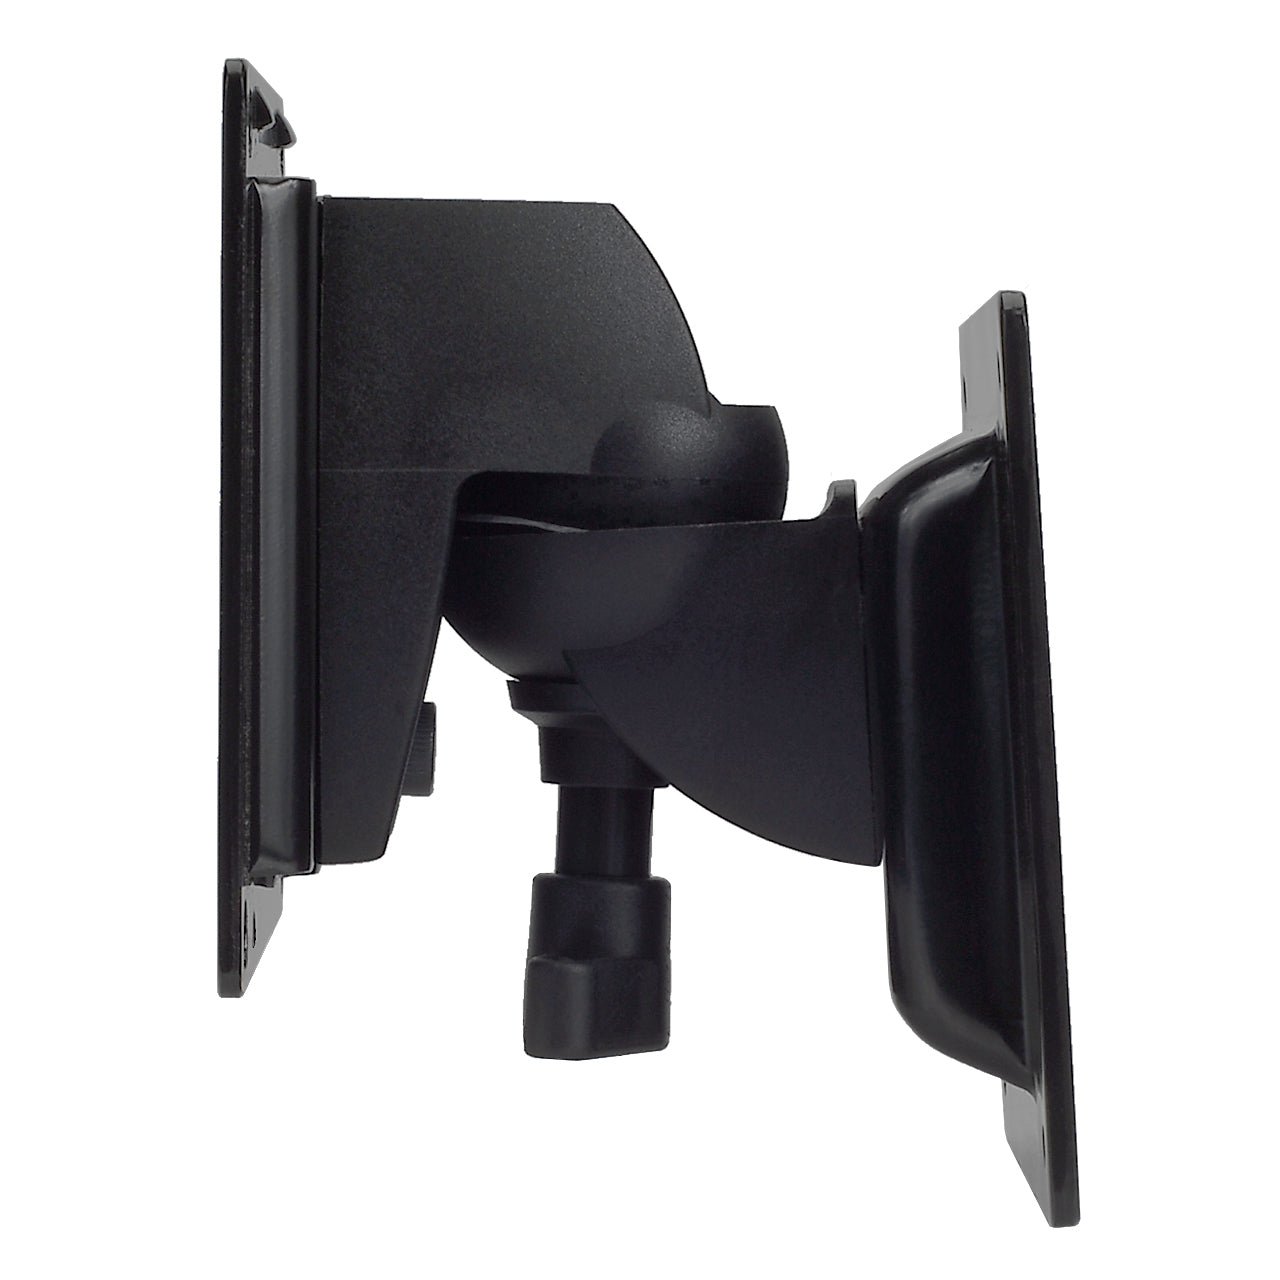 Magnadyne LCD-1 | Swivel and Tilt LCD TV Wall Mount Bracket - Magnadyne